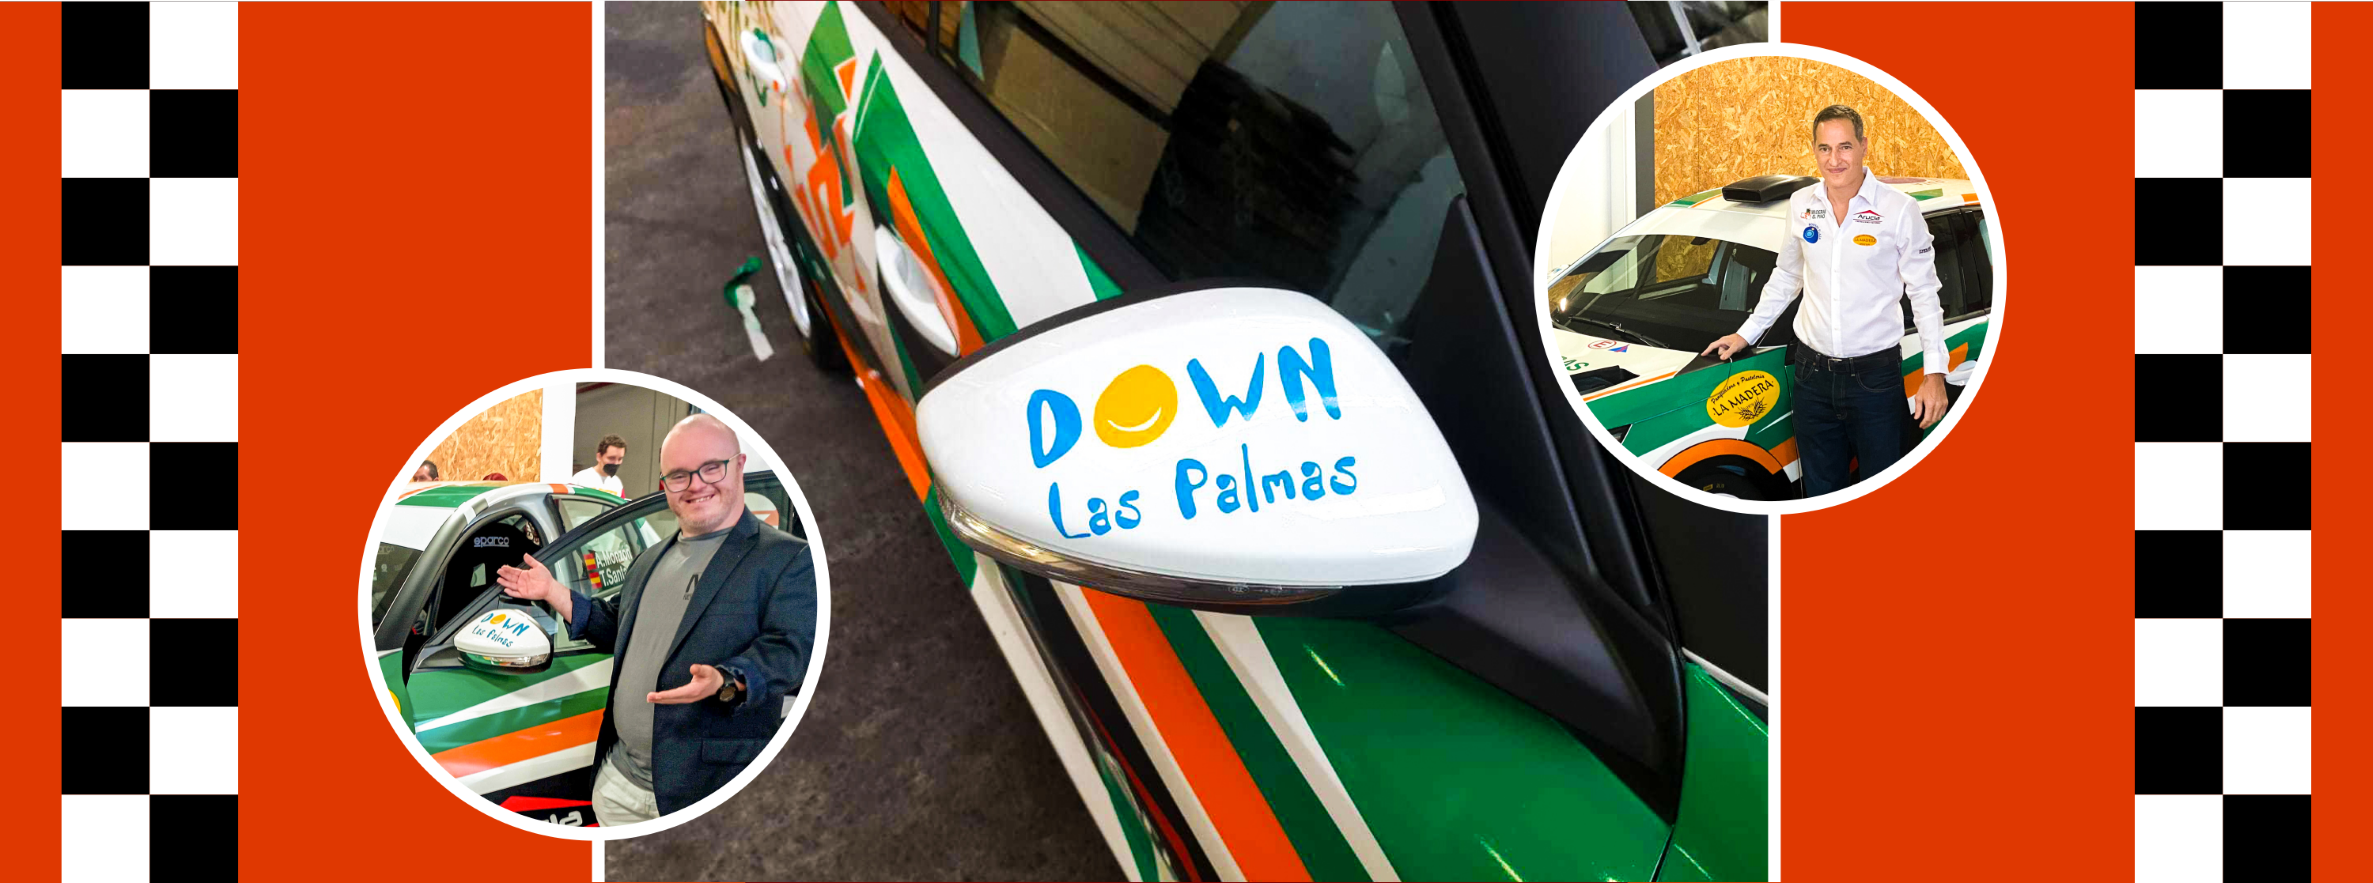 Fotografías del coche con el logo de Down Las Palmas